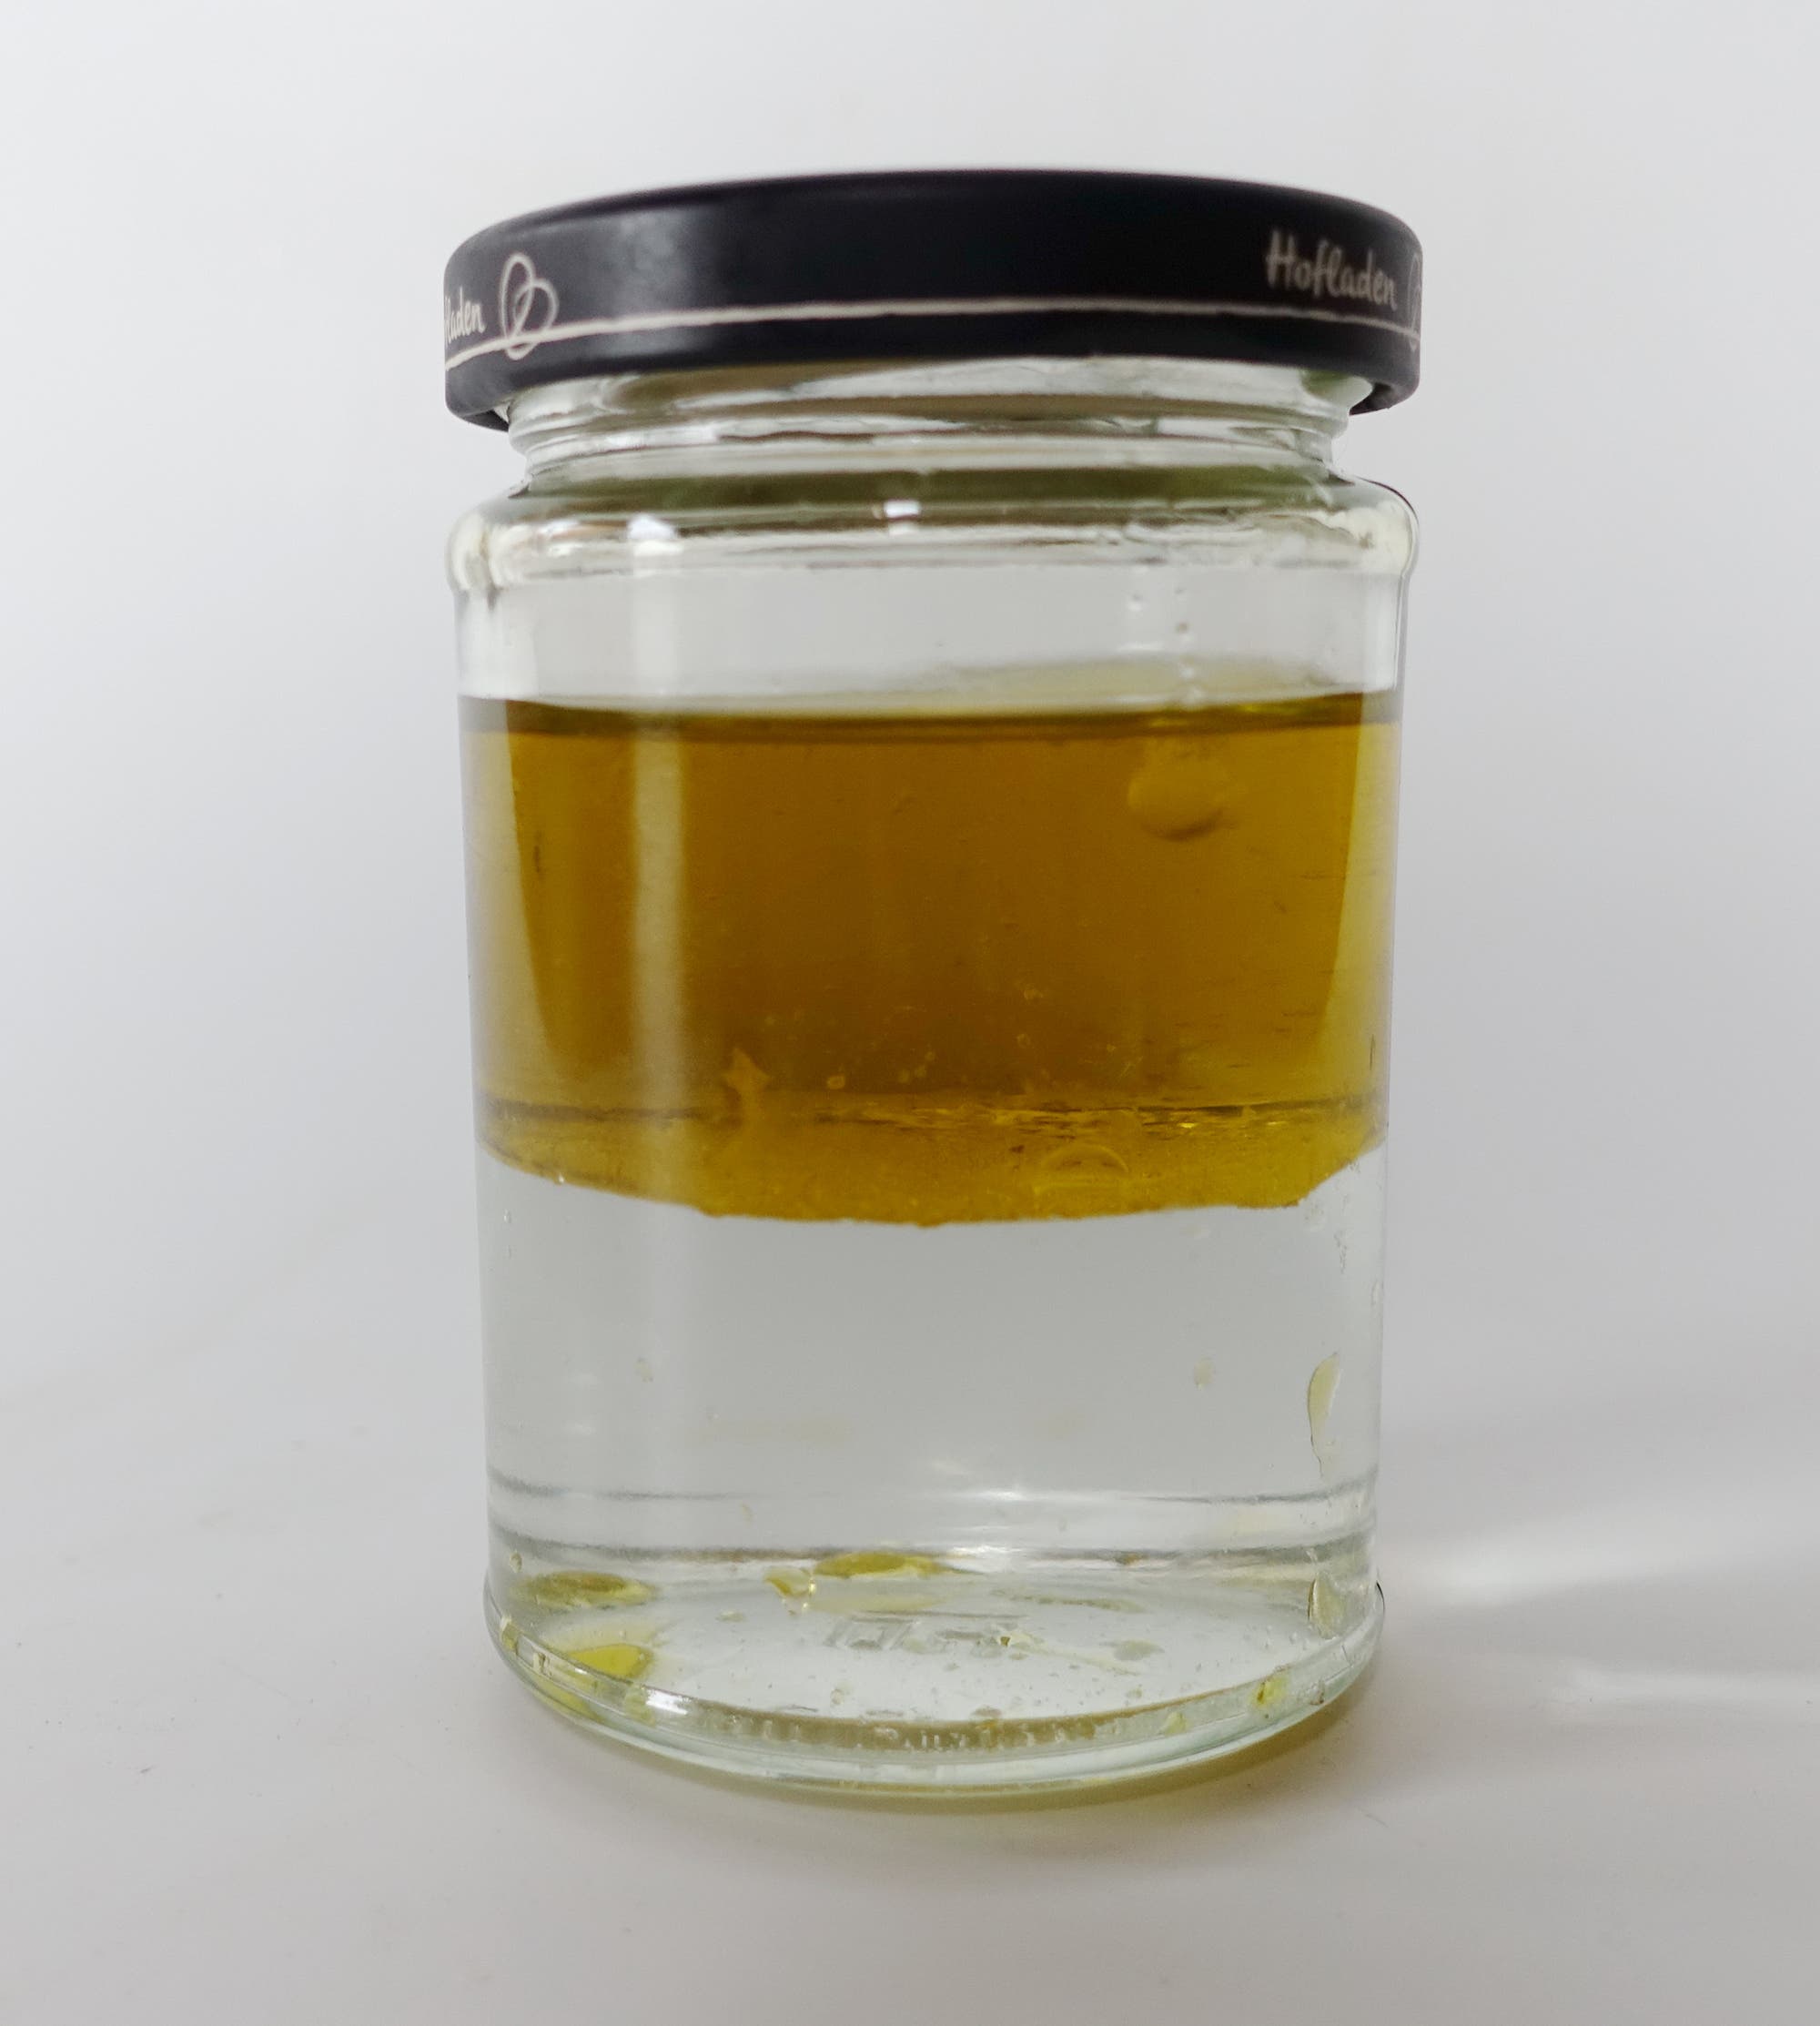 Öl treibt auf Wasser in einem Glas